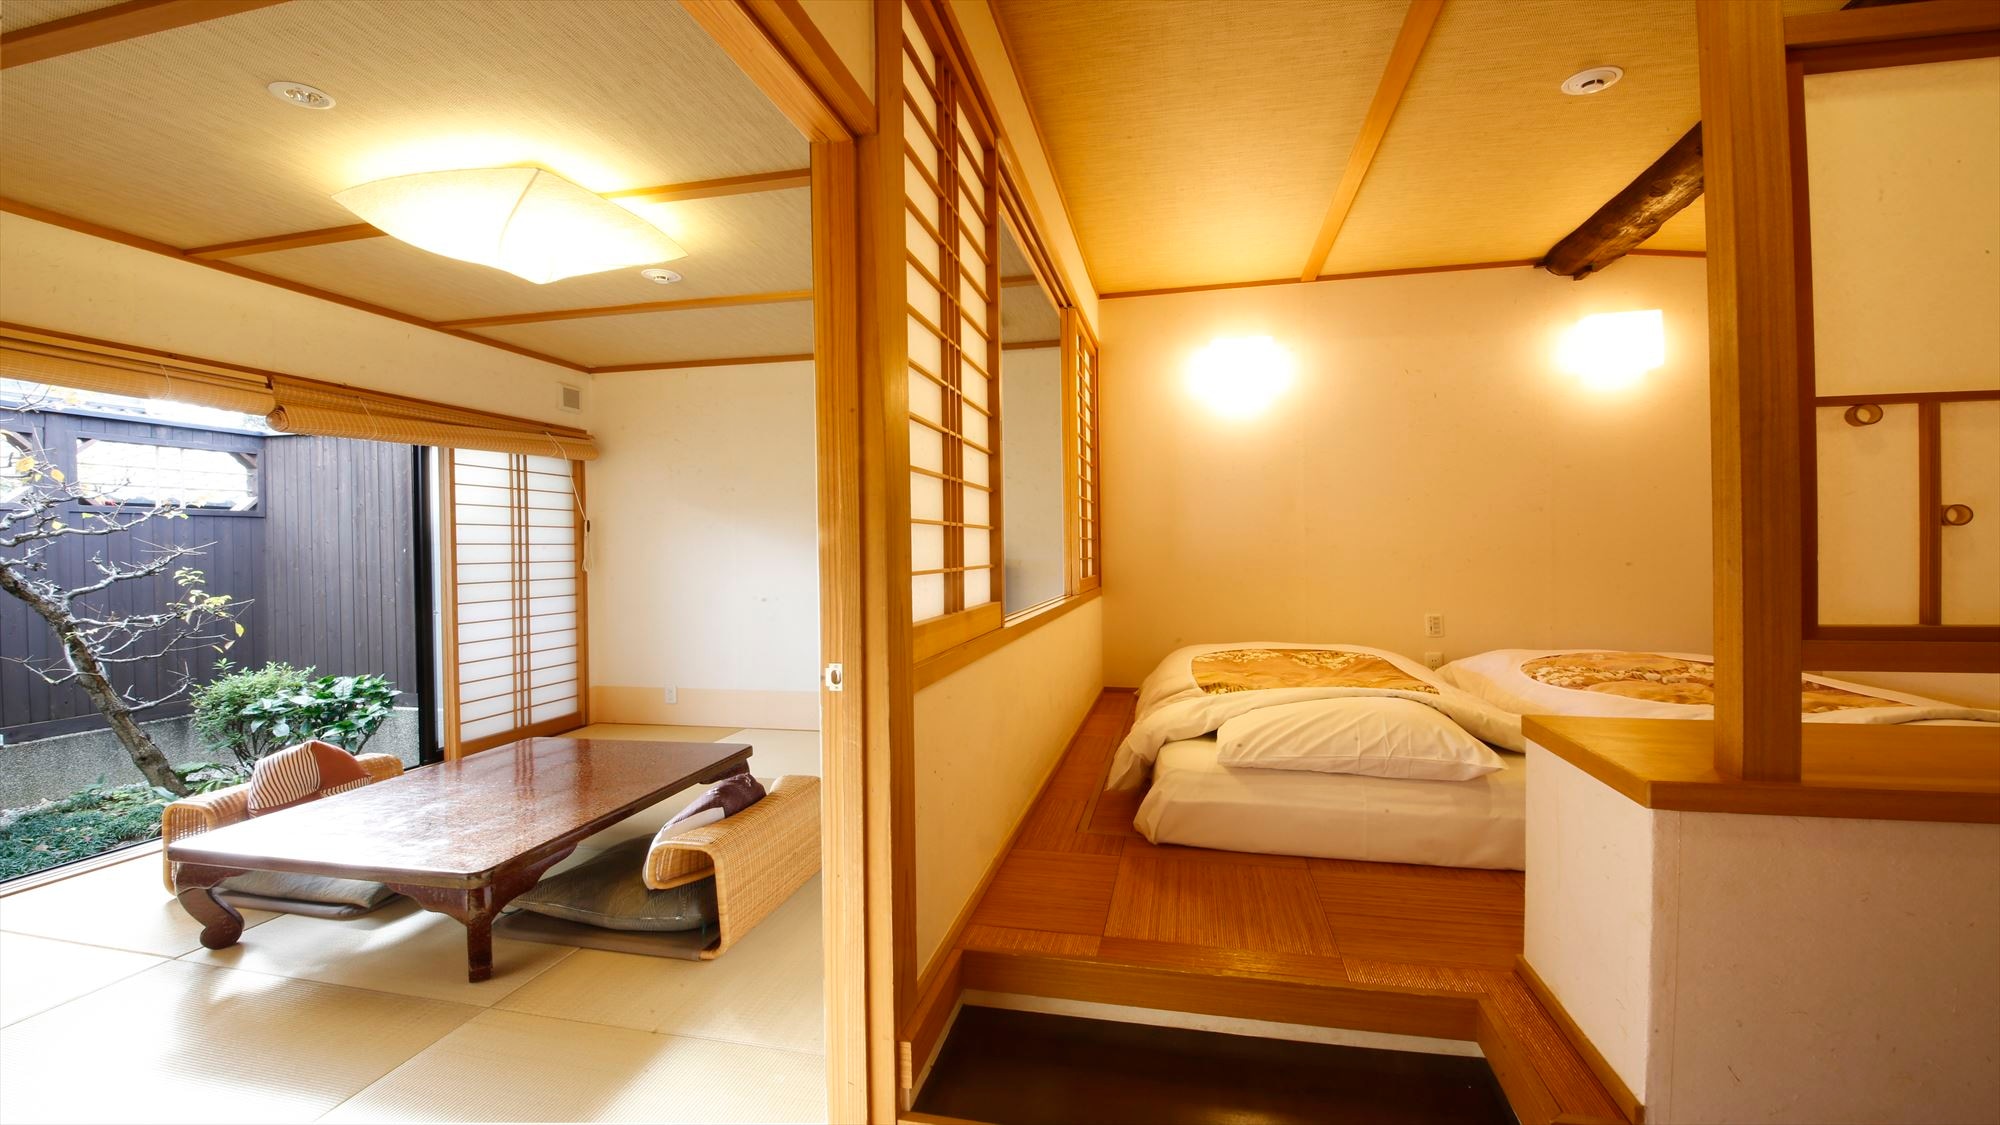 가나 나루야마장 매화 노천탕이 있는 방입니다. 이중으로 나뉘어진 12 다다미 방입니다.